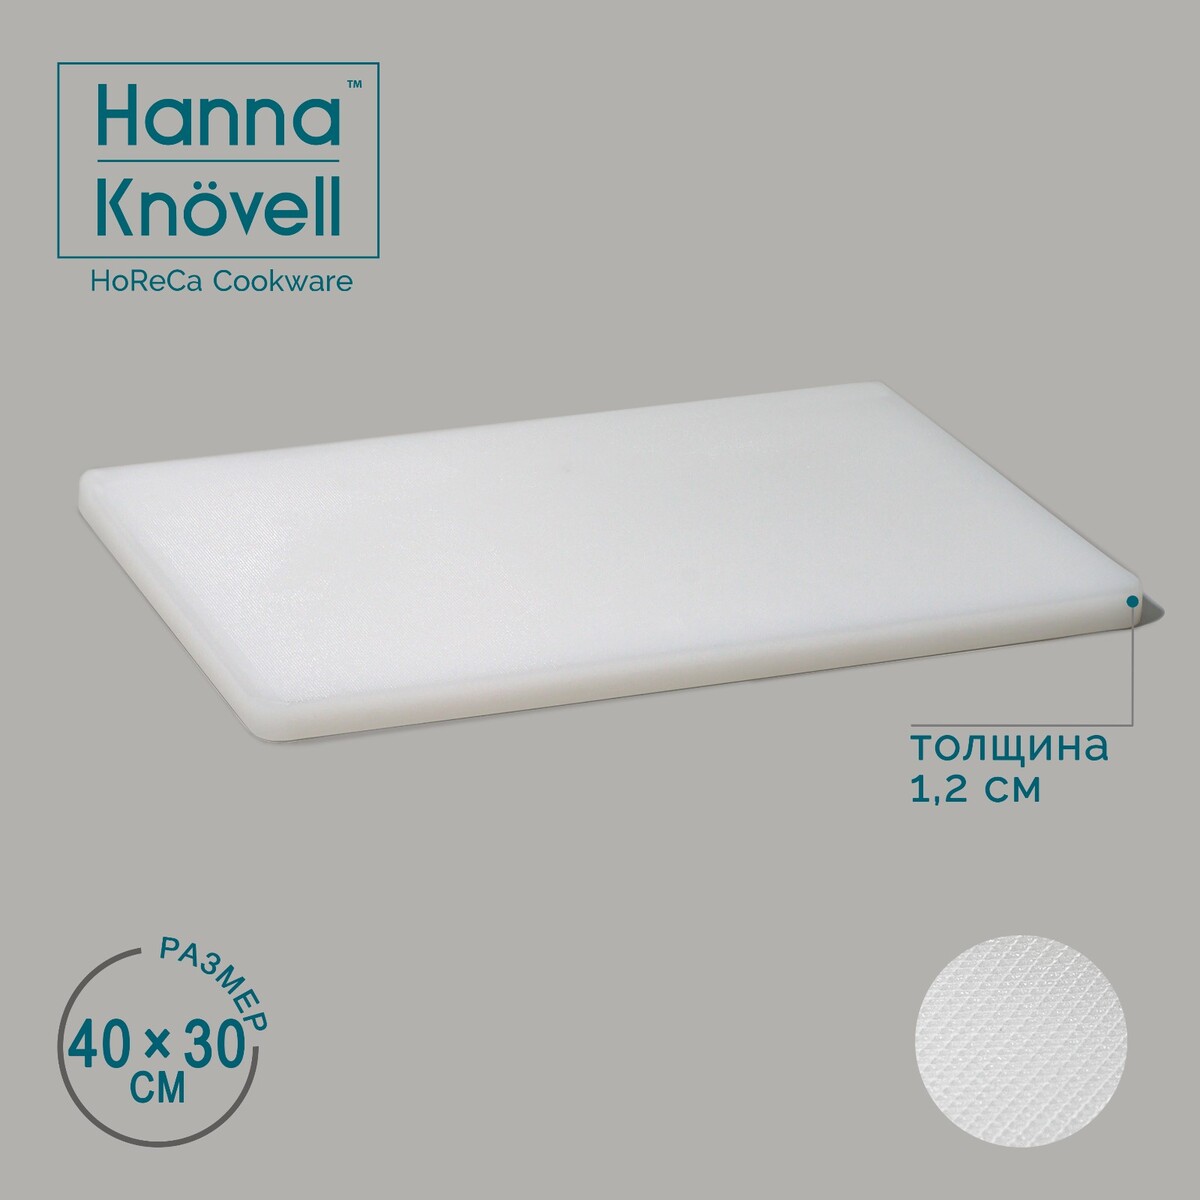 Доска профессиональная разделочная hanna knövell, 40×30×1,2 см, цвет белый доска пеленальная mr sandman белый